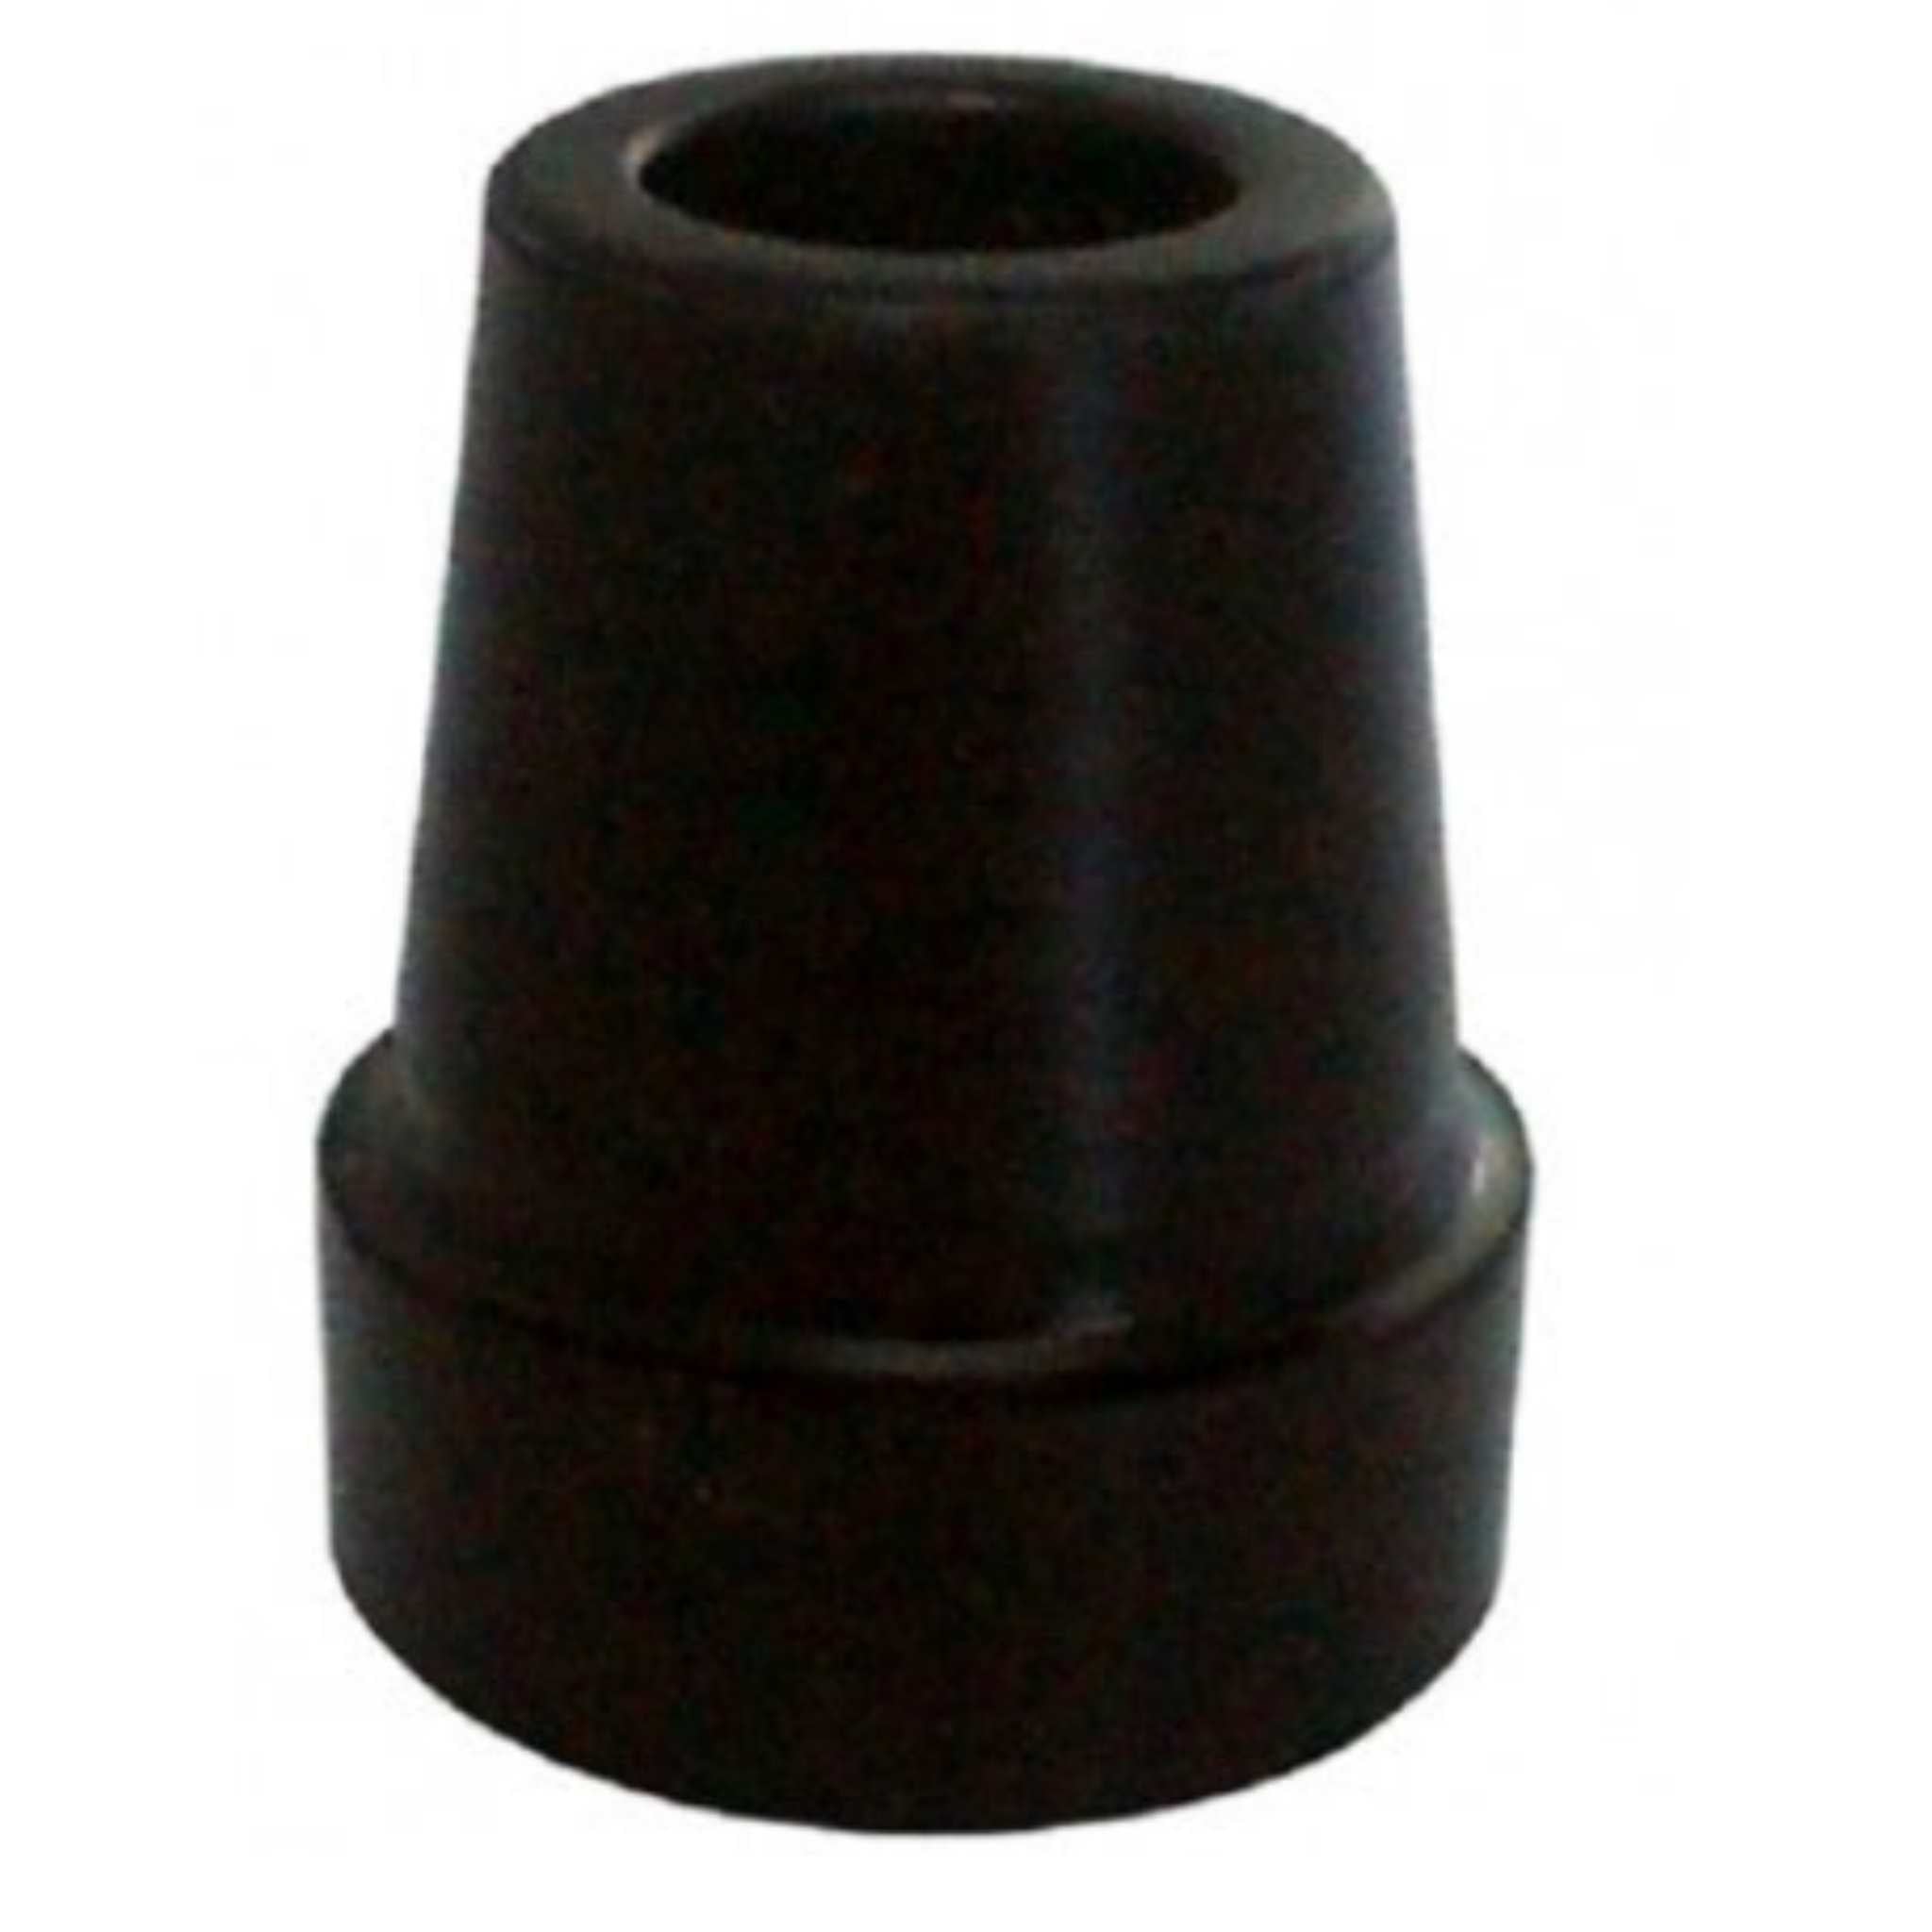 Black Walking Stick Tip Replacement - 19mm Diameter Tube